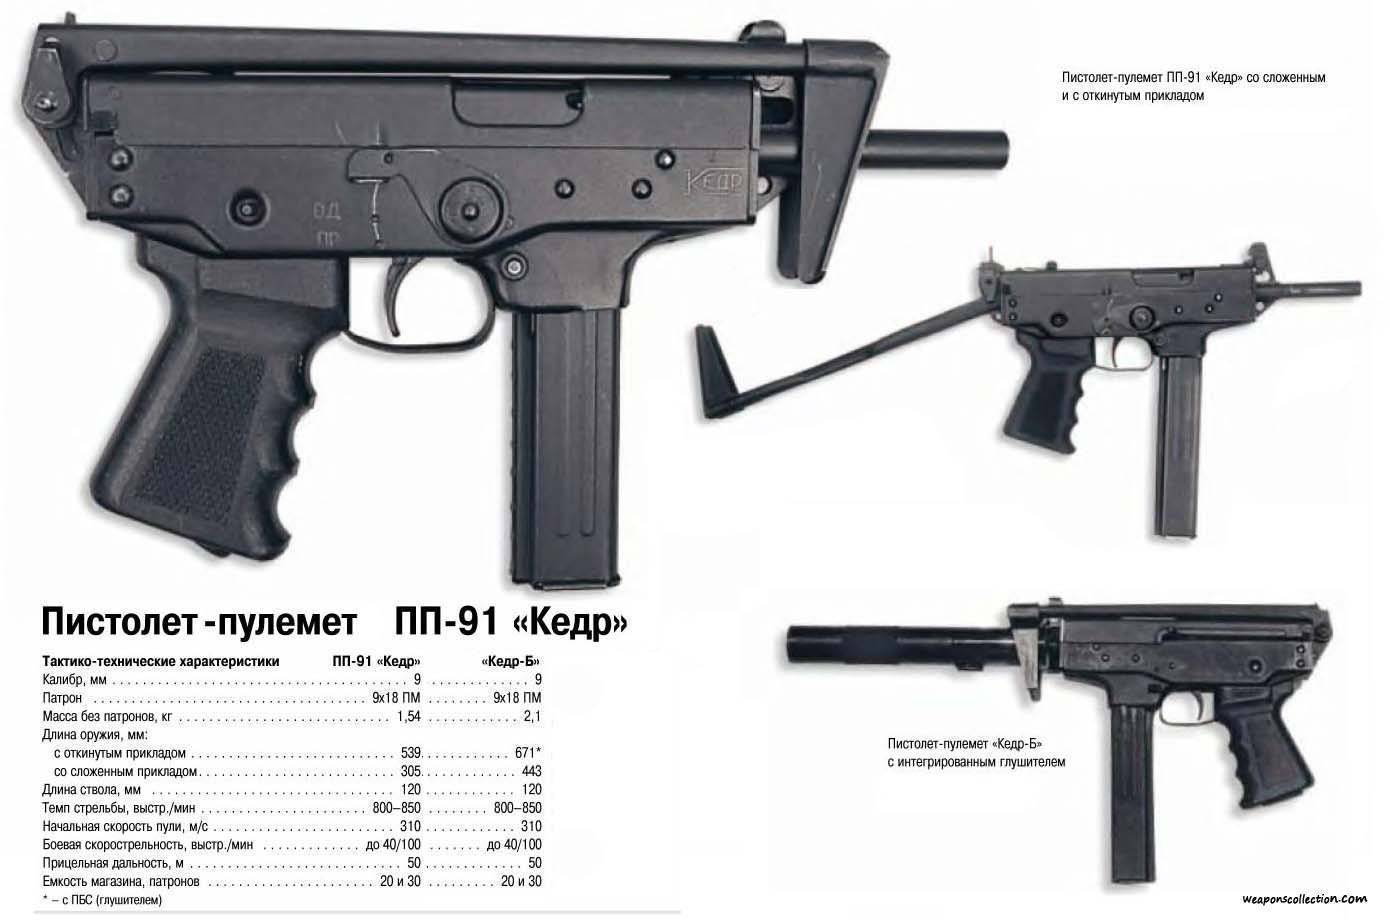 Ср-2 вереск: пистолет-пулемёт, оружие спецназа, тактико-тактические характеристики (ттх), патрон калибра 9мм